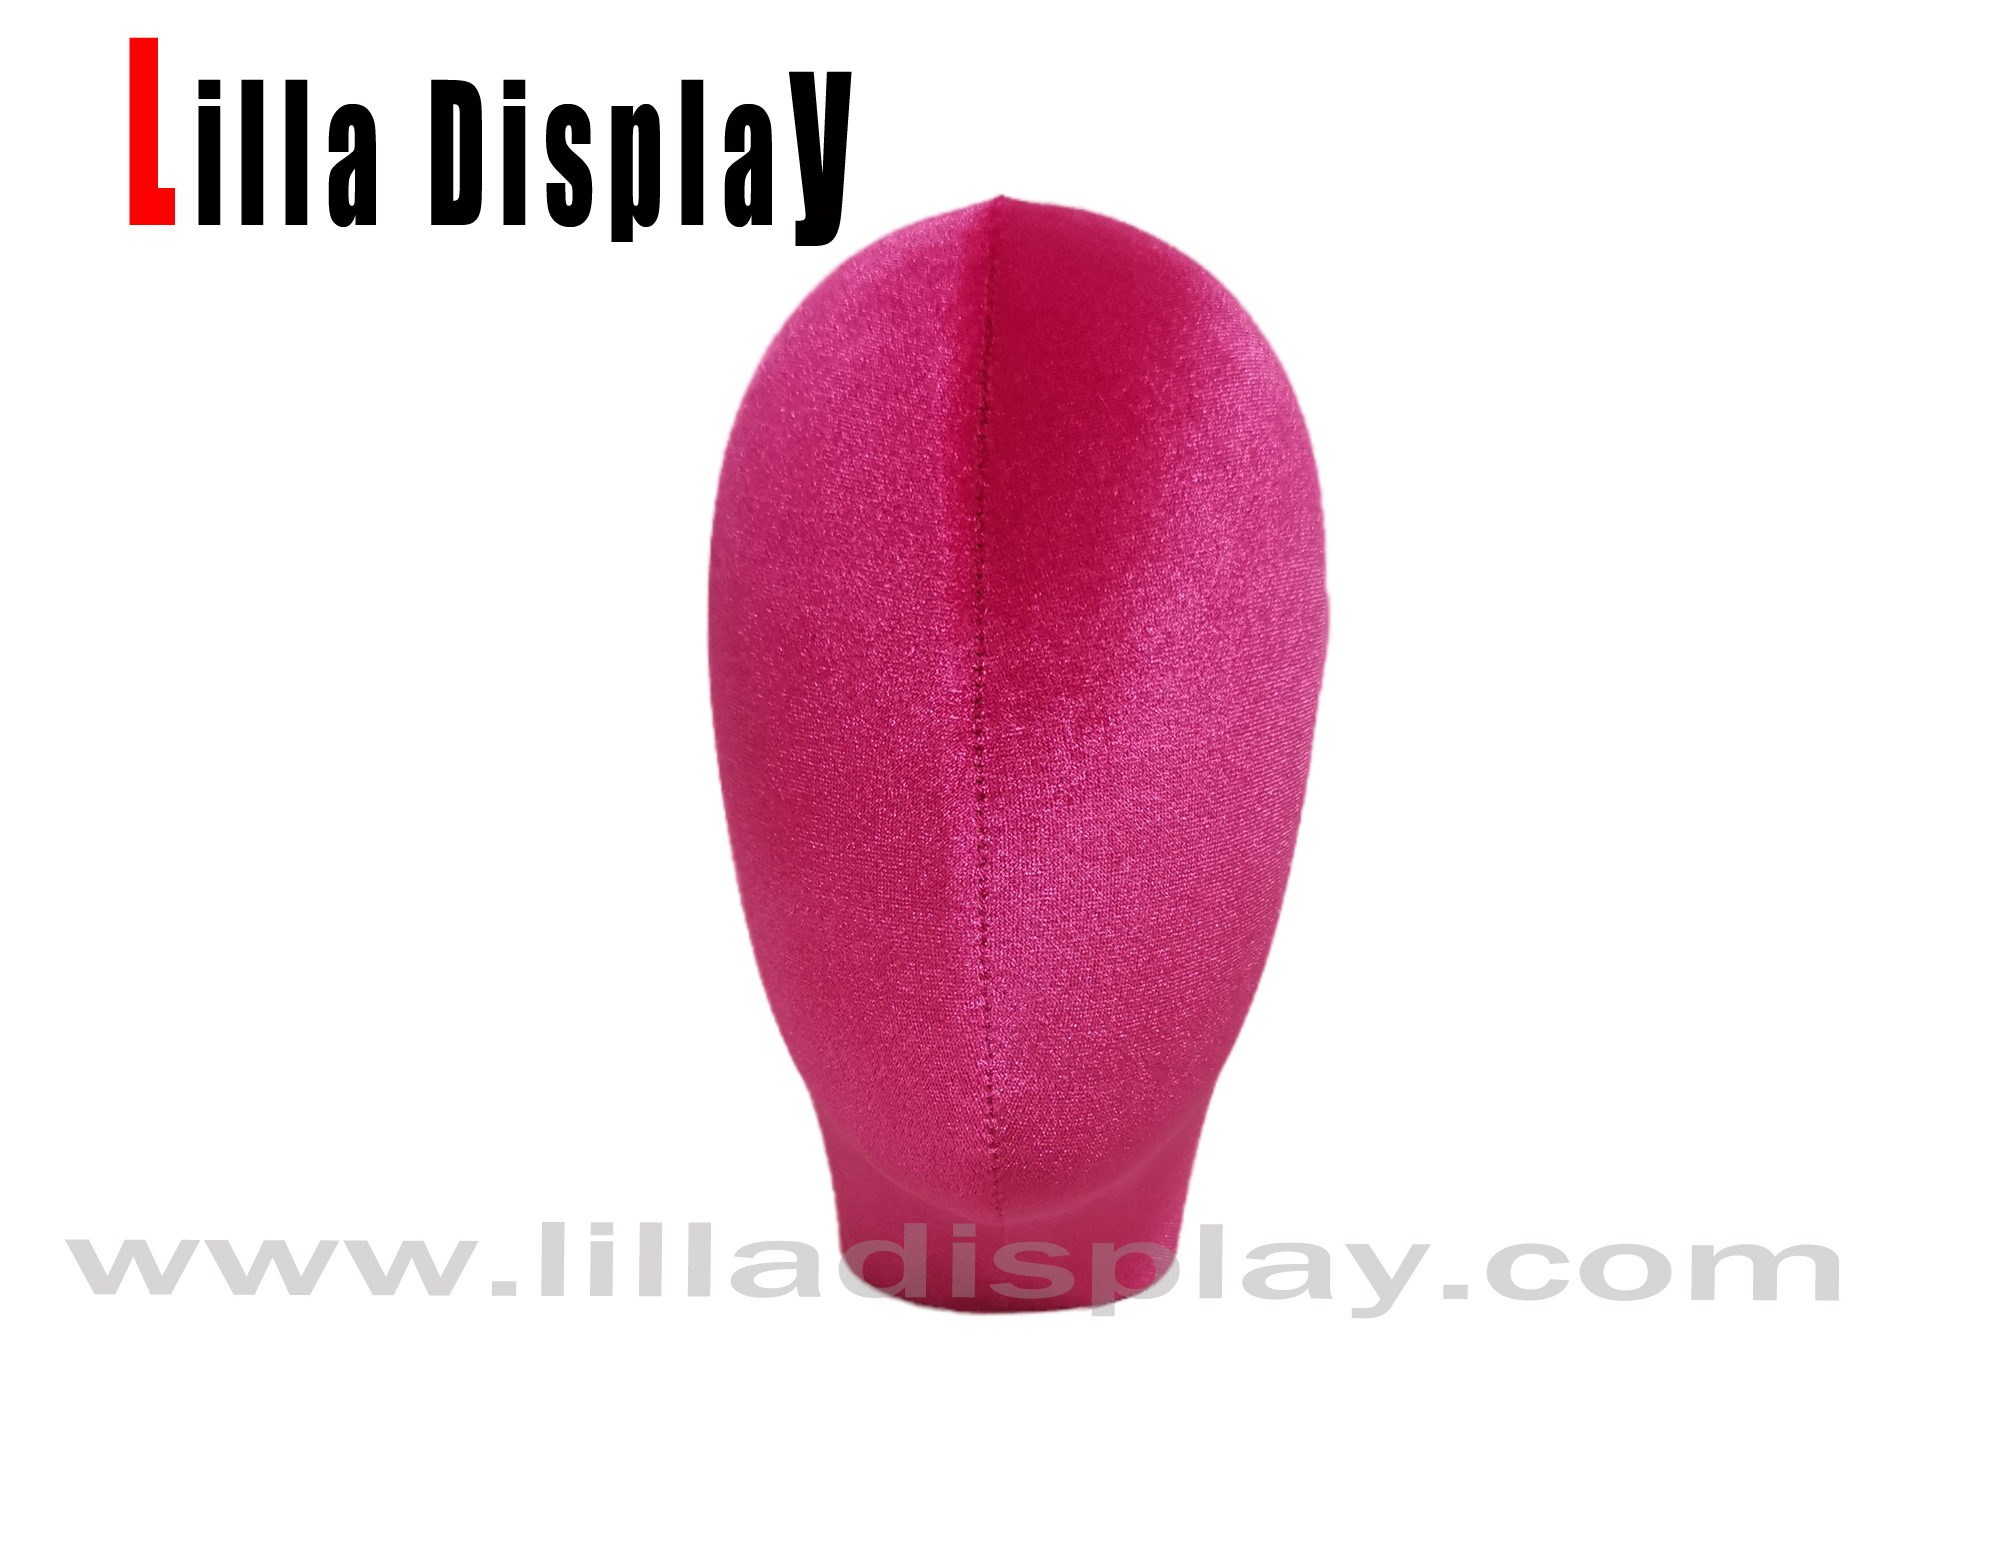 zářivě růžový lilladisplay 38 usd ženská figurína hlava lucy pro turban zobrazení